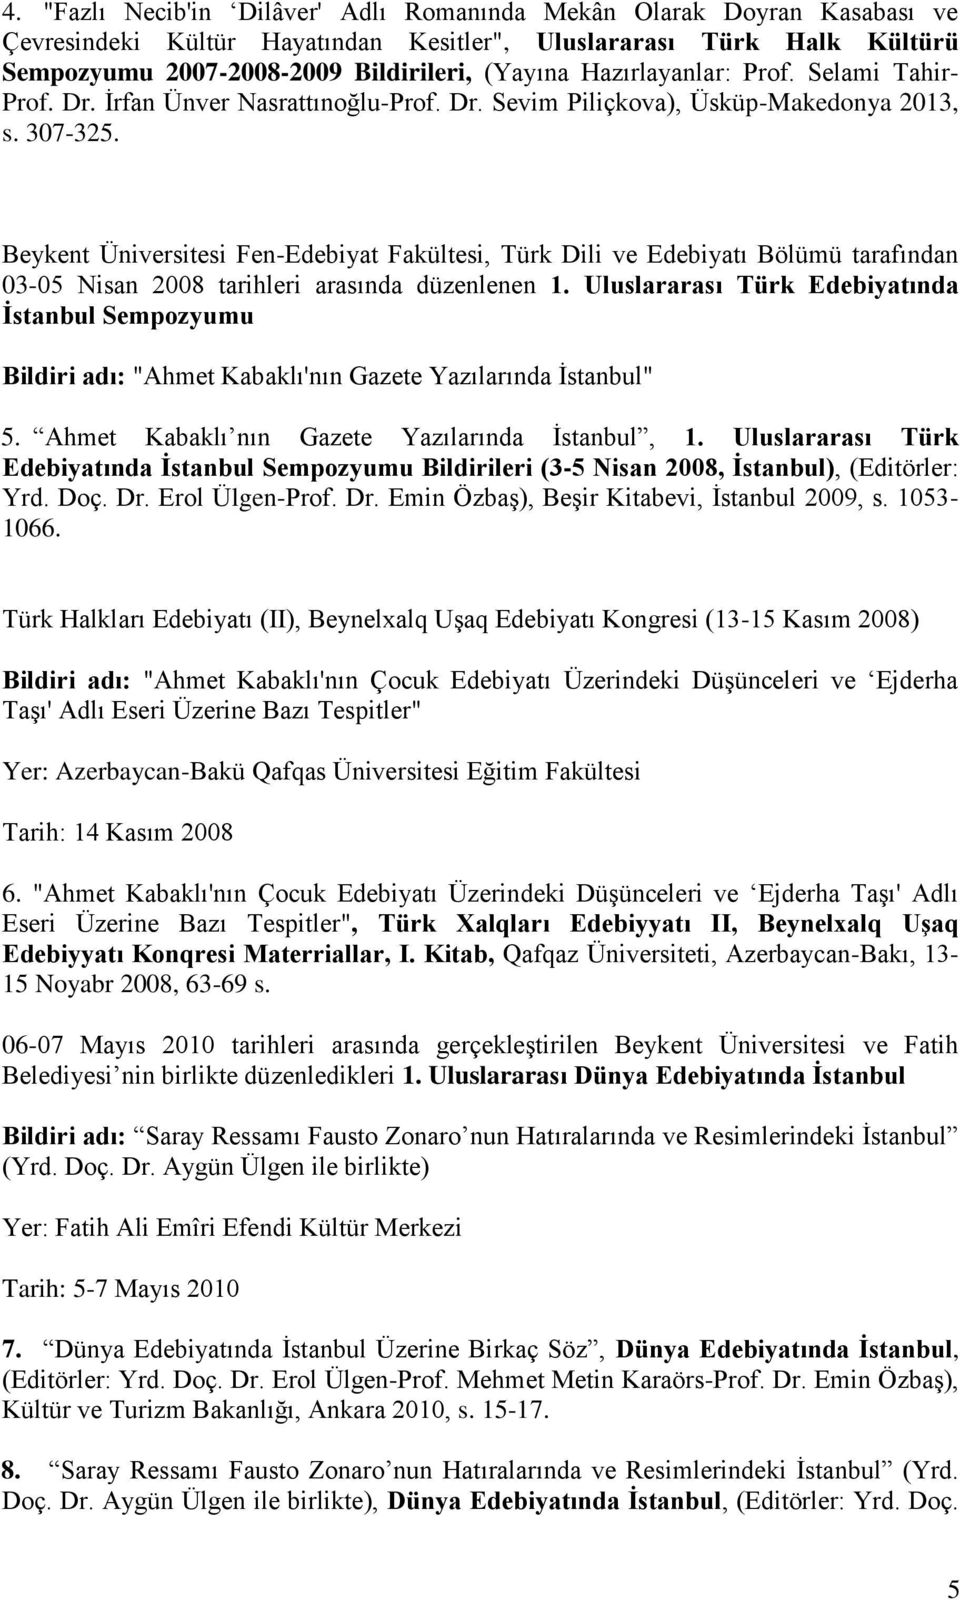 Beykent Üniversitesi Fen-Edebiyat Fakültesi, Türk Dili ve Edebiyatı Bölümü tarafından 03-05 Nisan 2008 tarihleri arasında düzenlenen 1.